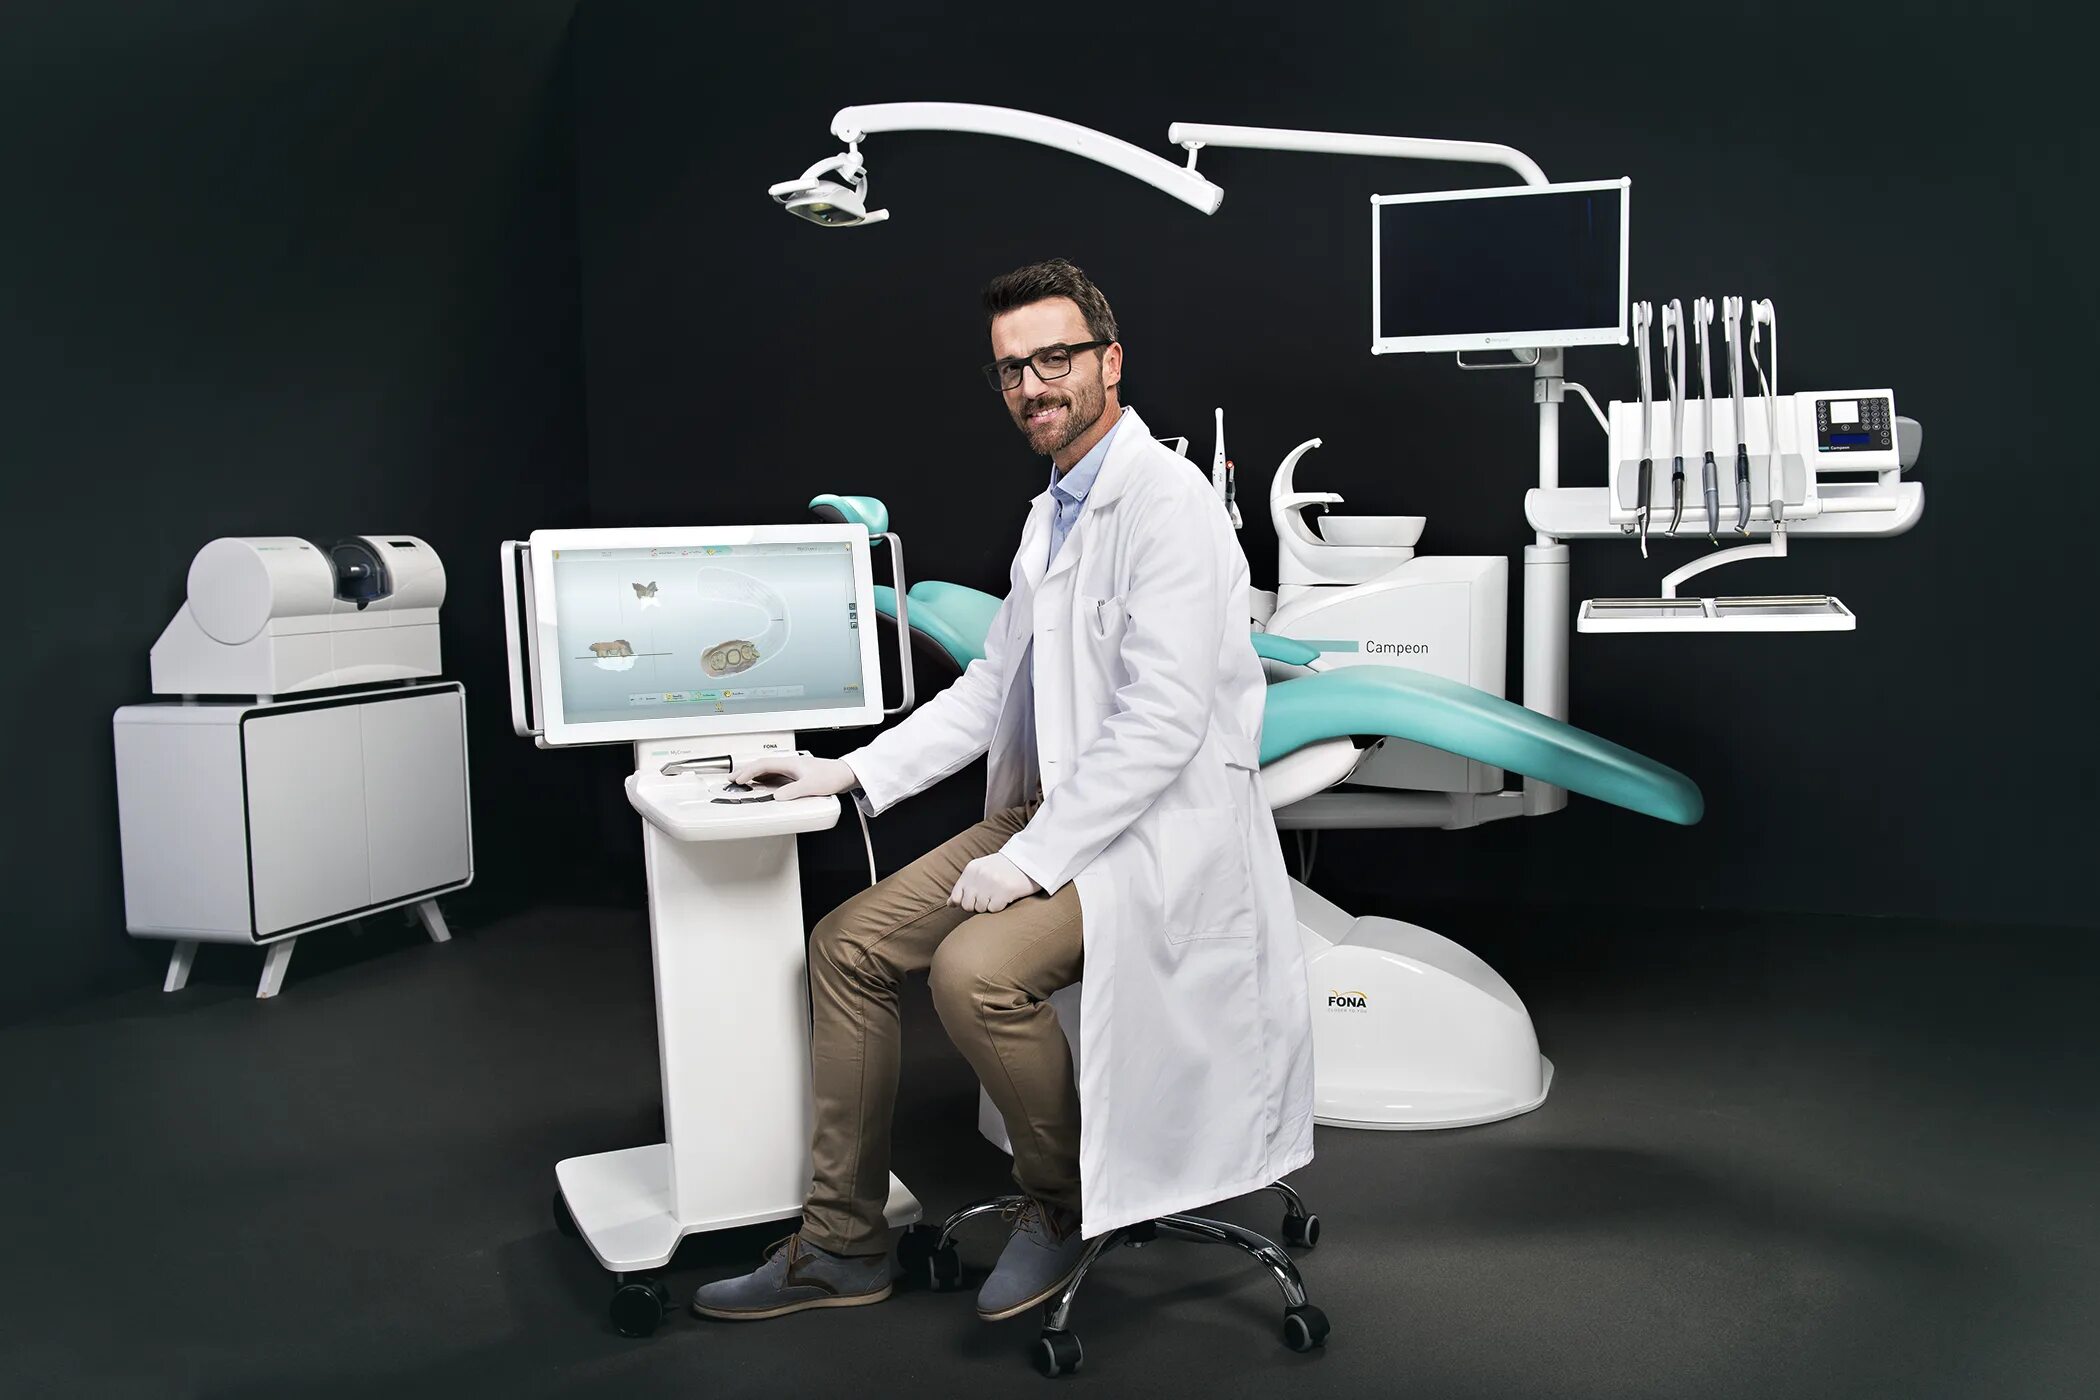 Стоматологи без работы. Информационные технологии в стоматологии. Современные технологии в стоматологии. Цифровые технологии в стоматологии. Компьютер в стоматологии.